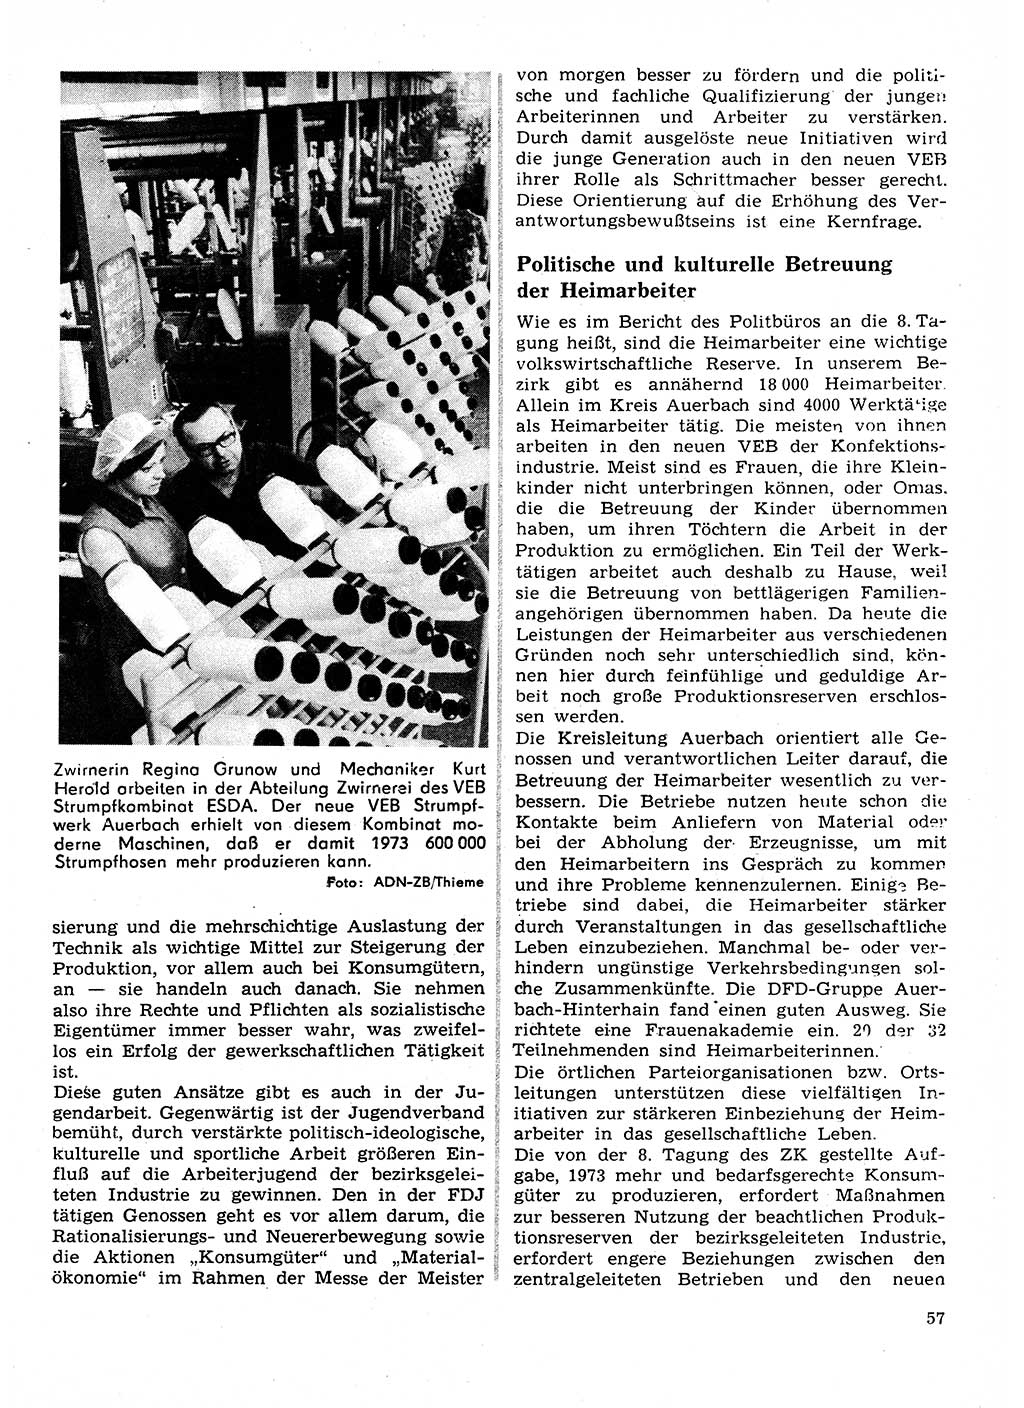 Neuer Weg (NW), Organ des Zentralkomitees (ZK) der SED (Sozialistische Einheitspartei Deutschlands) für Fragen des Parteilebens, 28. Jahrgang [Deutsche Demokratische Republik (DDR)] 1973, Seite 57 (NW ZK SED DDR 1973, S. 57)